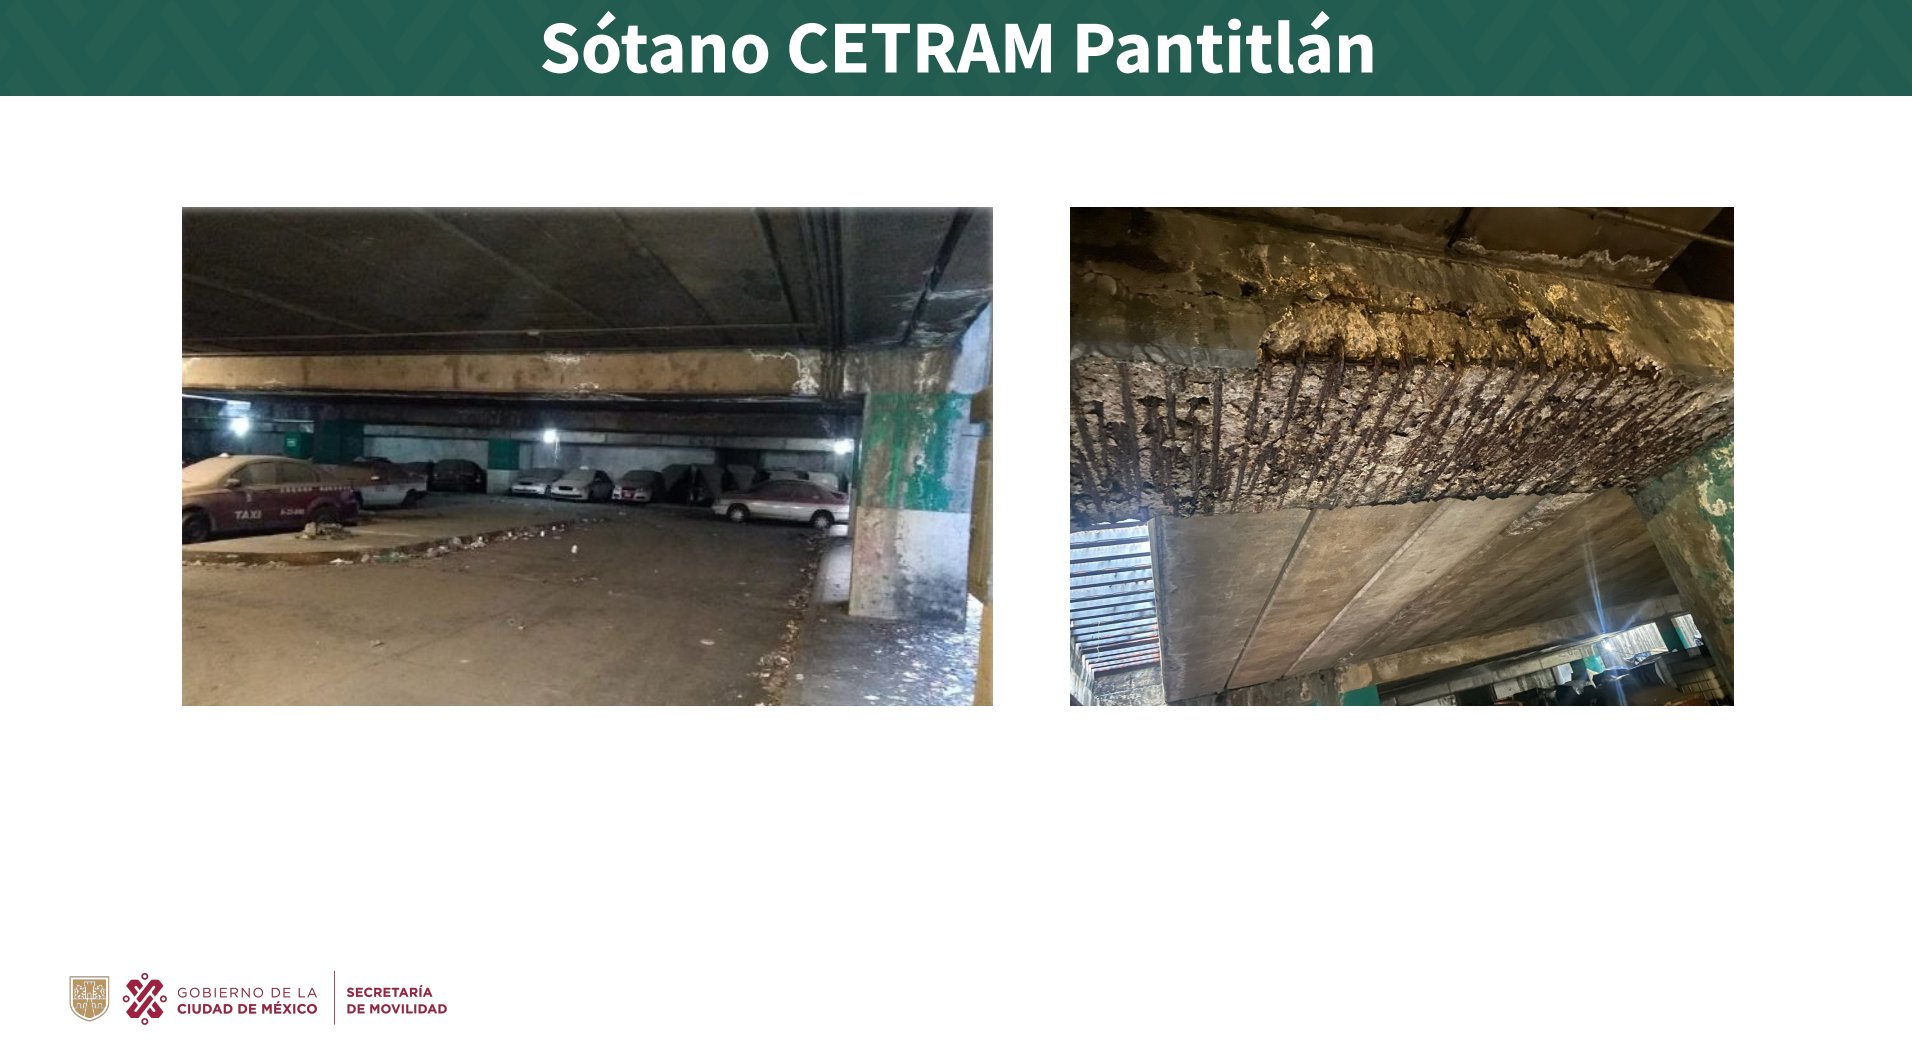 La Secretaría de Movilidad de la Ciudad de México anunció que habrá un cierre parcial en un tramo del Cetram Pantitlán debido a trabajos de restauración (Foto: Twitter/ @LaSEMOVI)